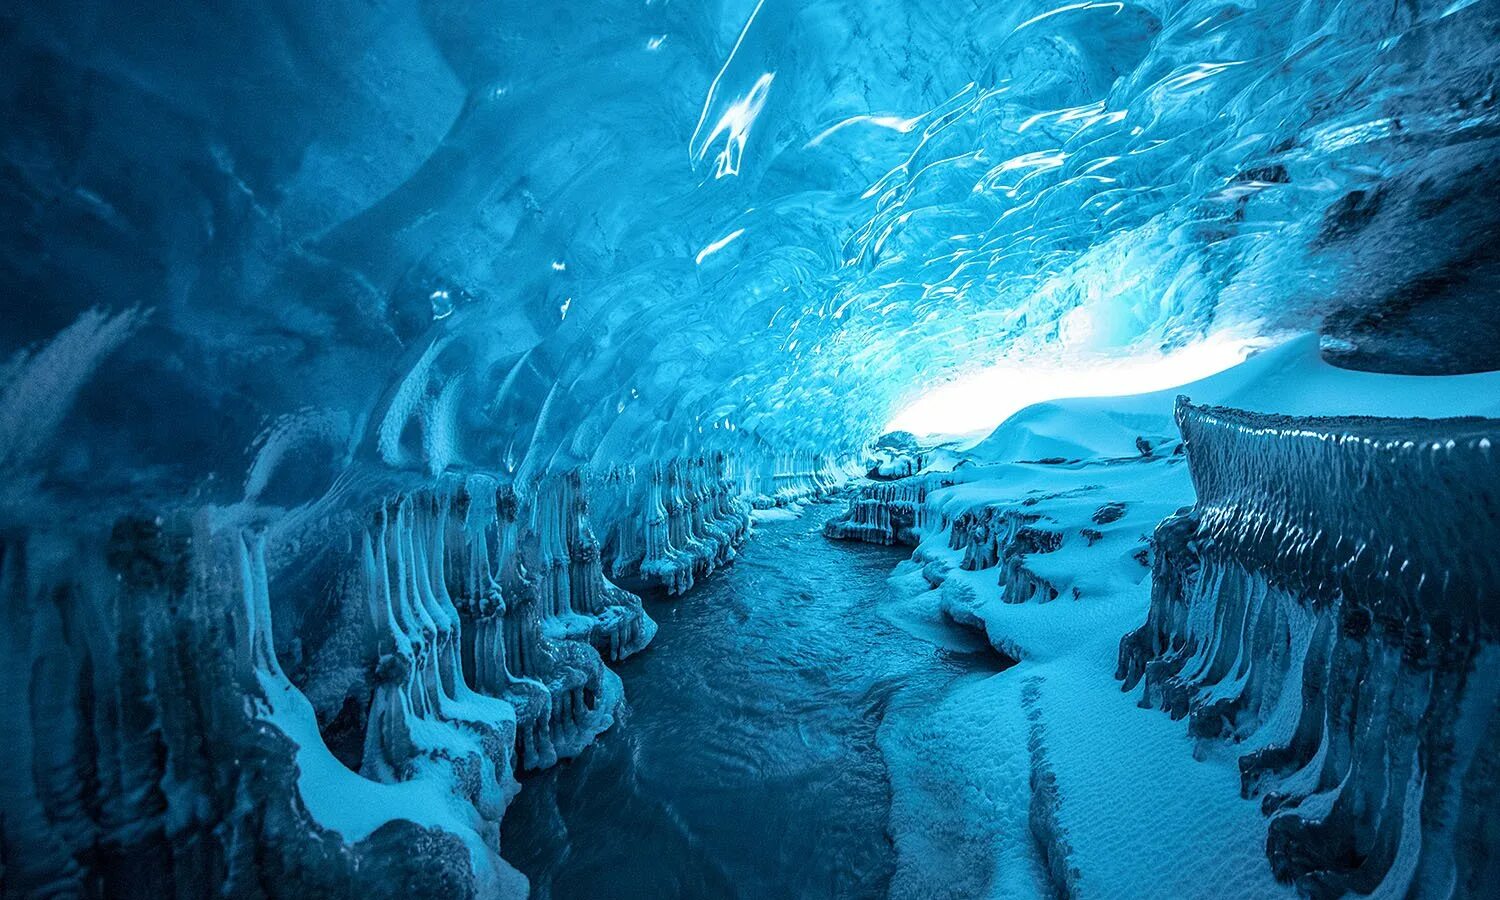 Ледяной каньон Гренландия. Исландия ледник ватнайёкюдль. Пещера Скафтафелл, Исландия. Пещеры ледника ватнайёкюдль, Исландия. Вода в подземных реках и озерах